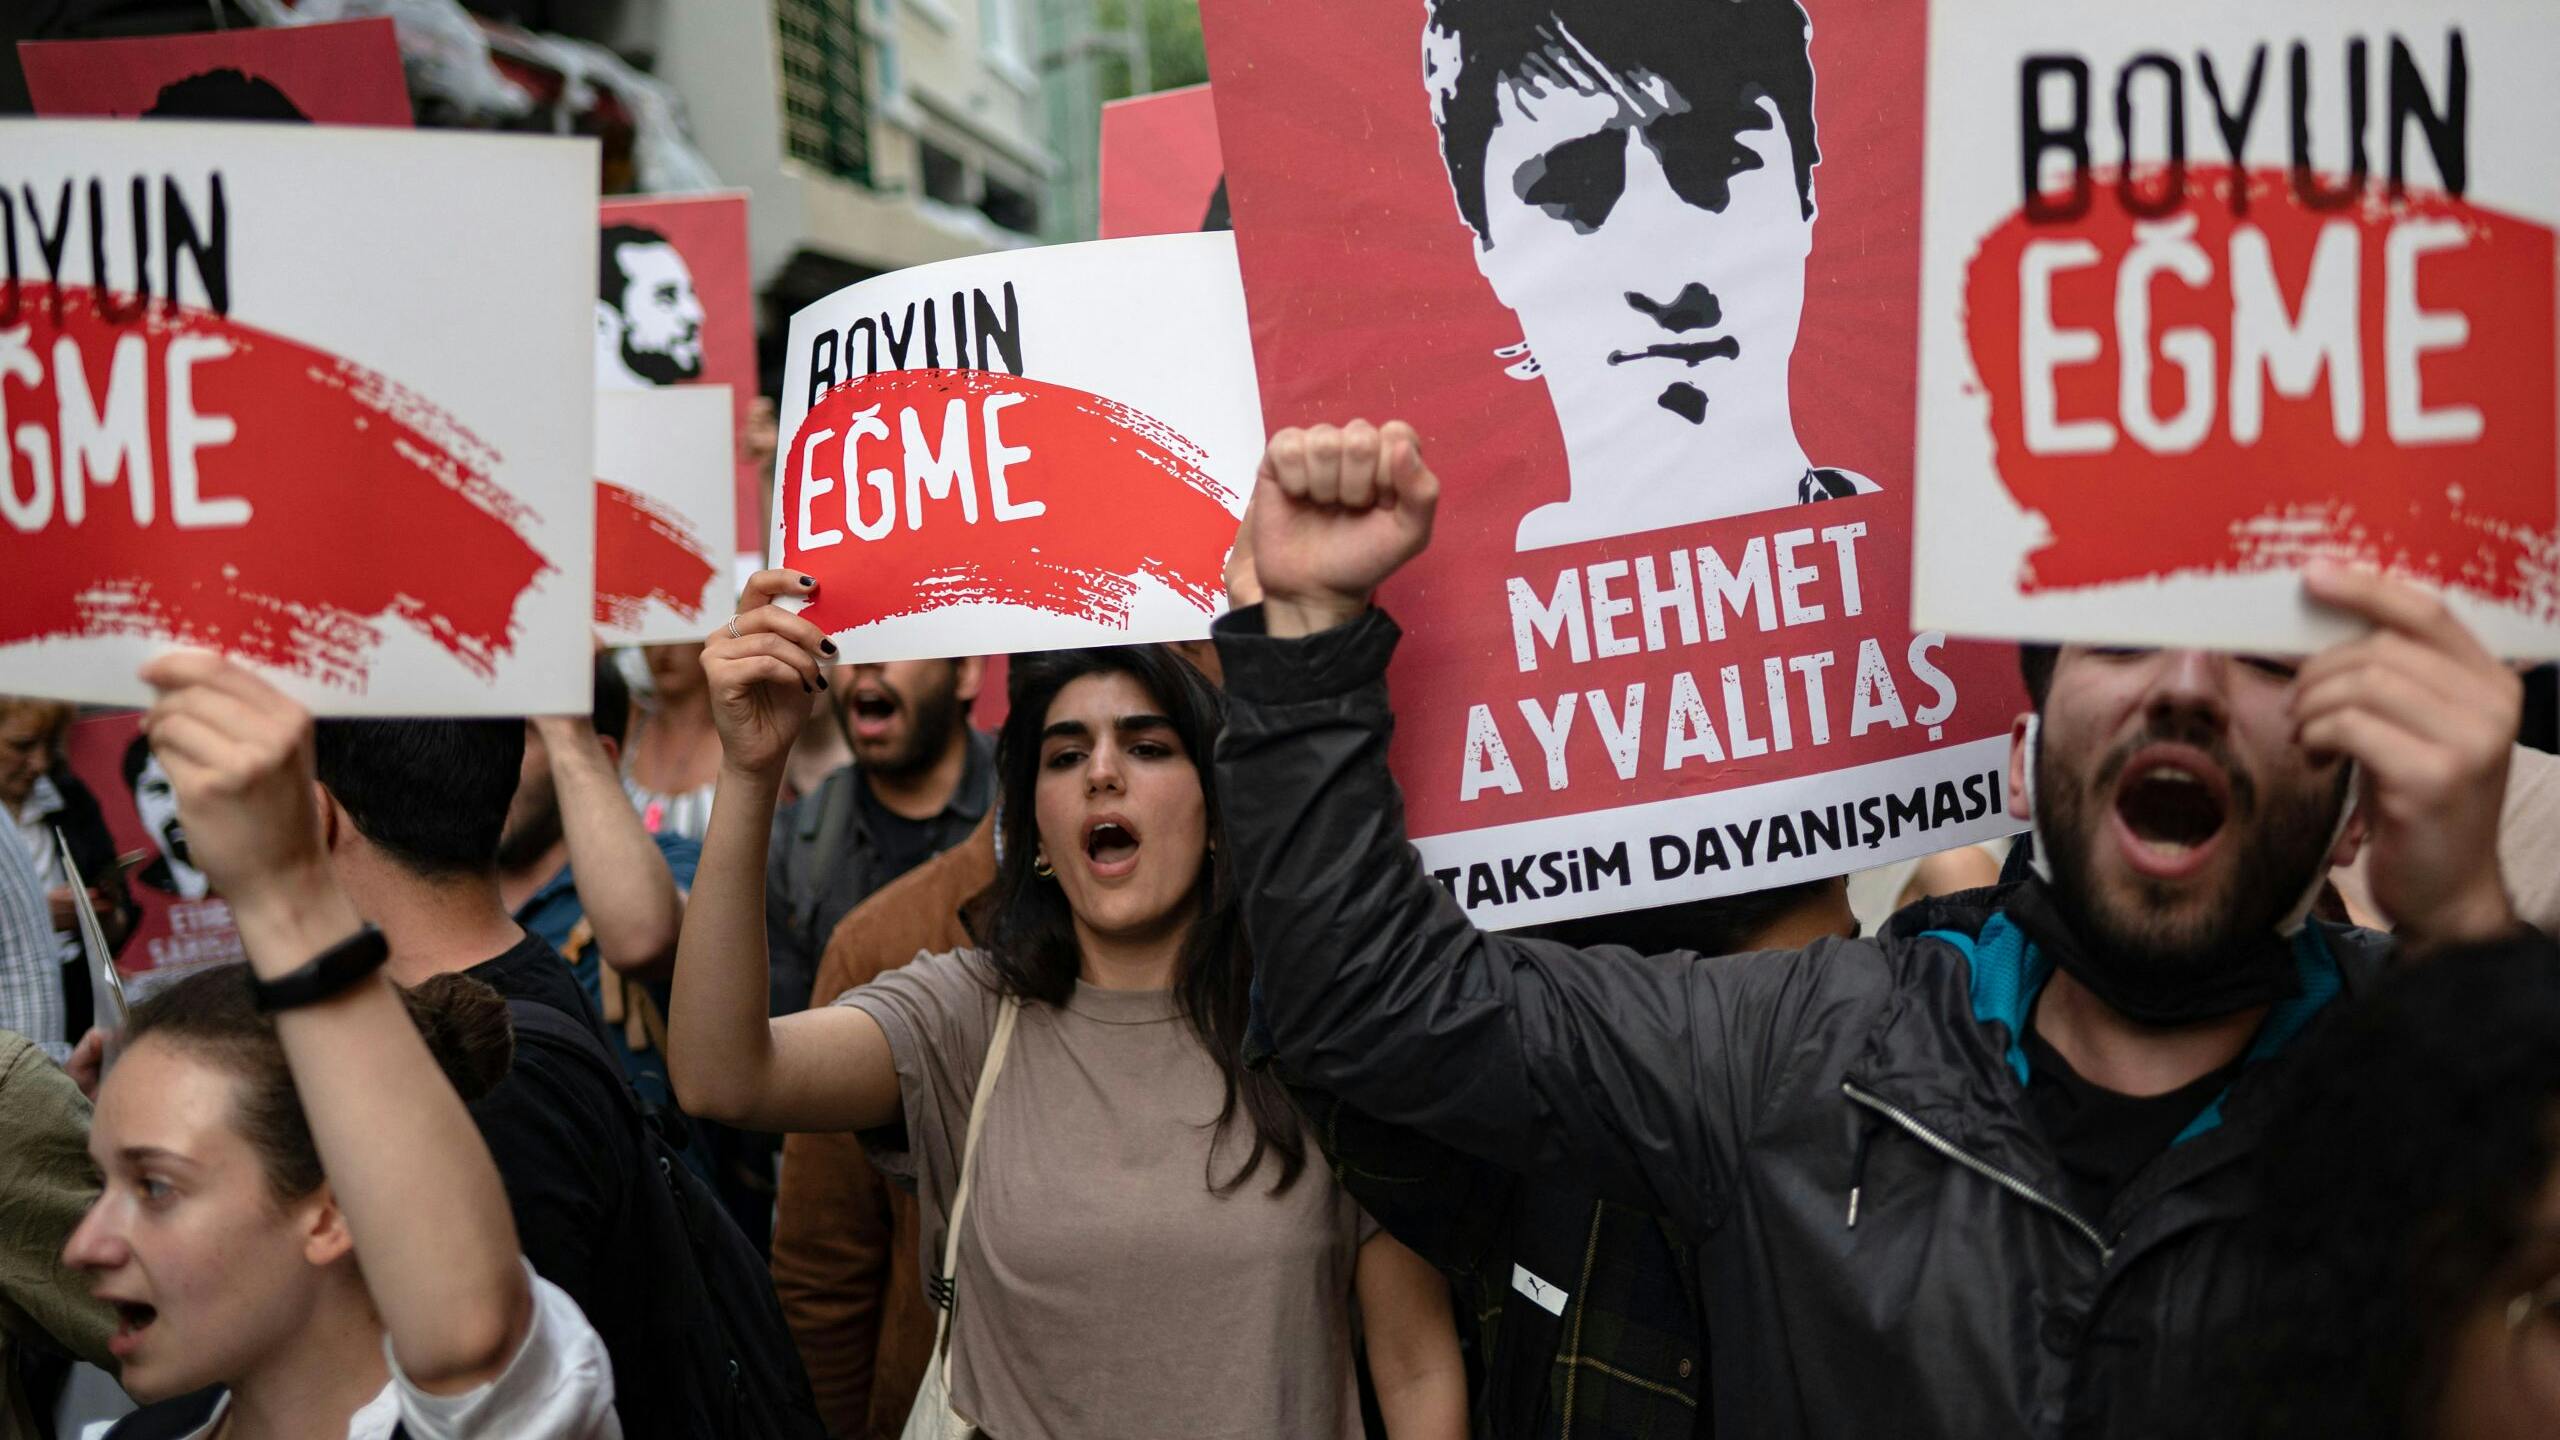 Turken demonstreren voorde vrijlating van zakenman en activist Osman Kavala die levenslang vast zit. 